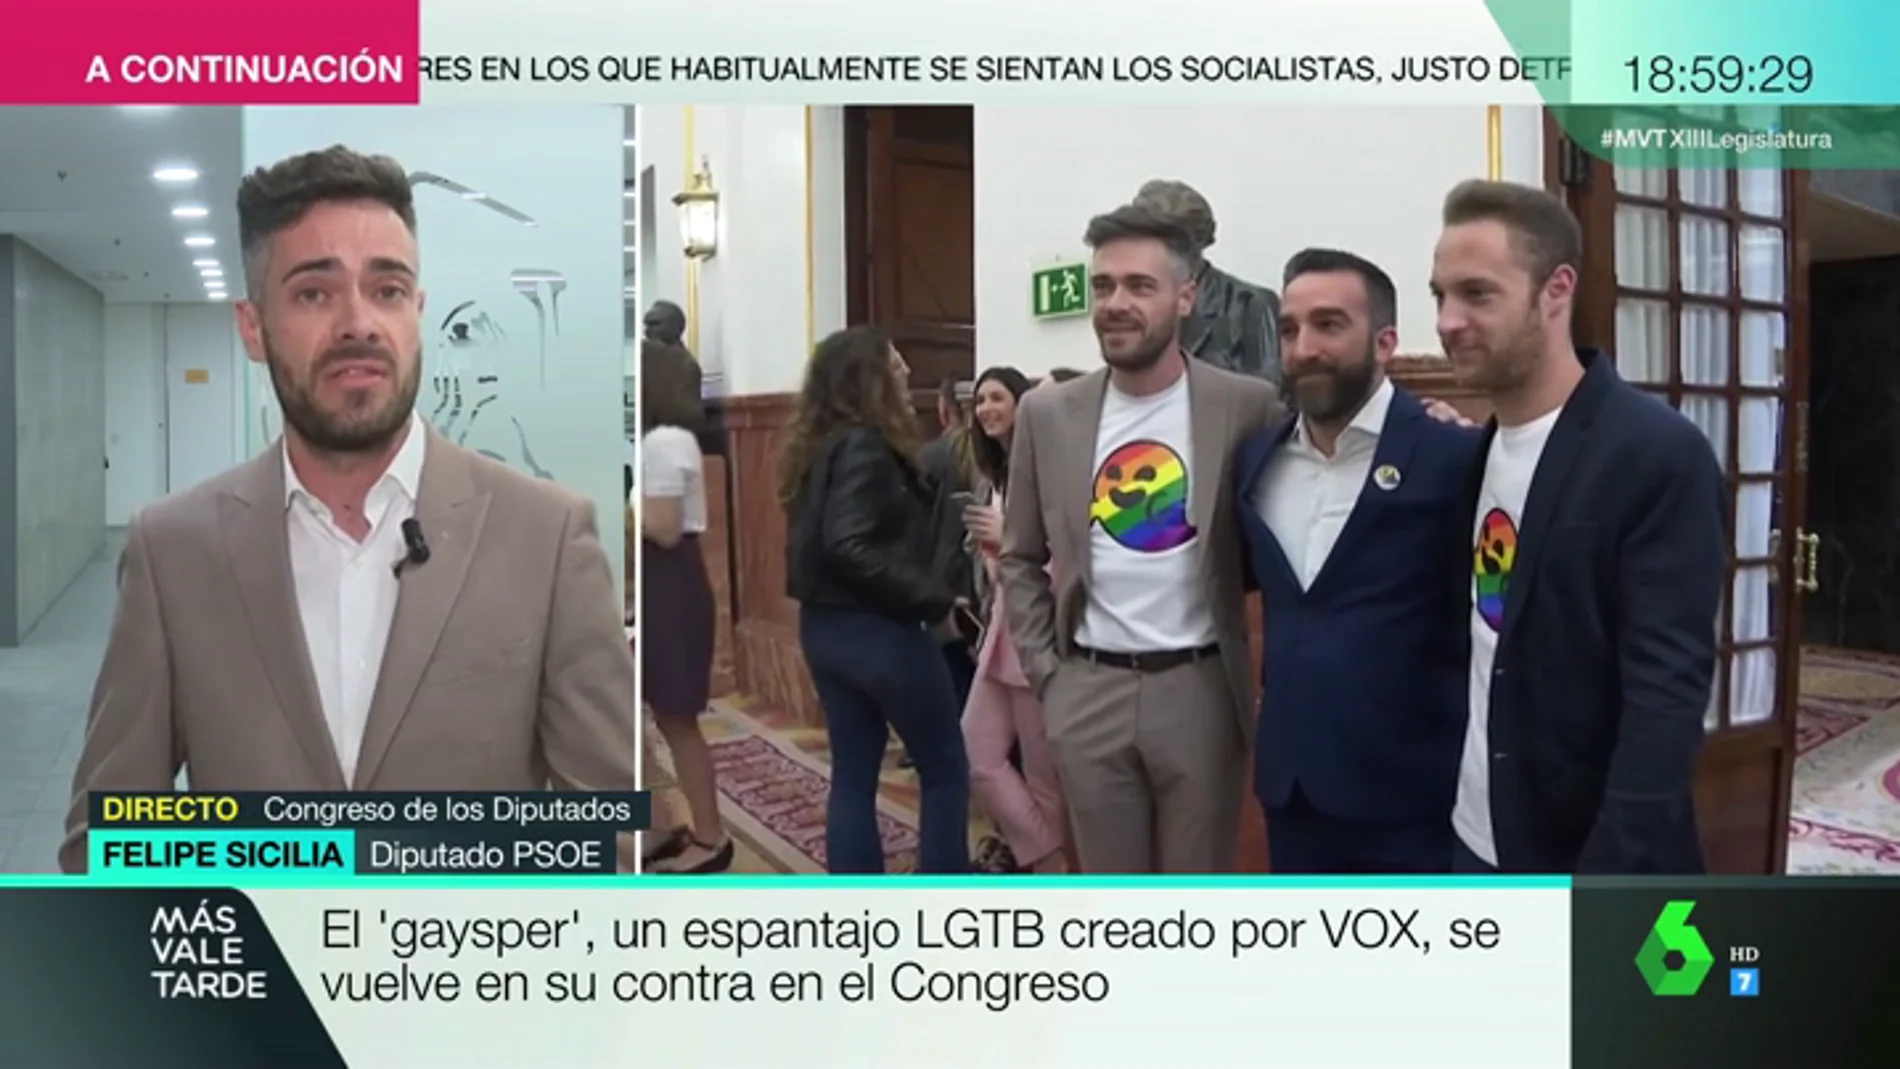 Felipe Sicilia, tras vestir una camiseta con 'gaysper' en el Congreso: "Lo que para muchos son fantasmas, para otros son derechos"